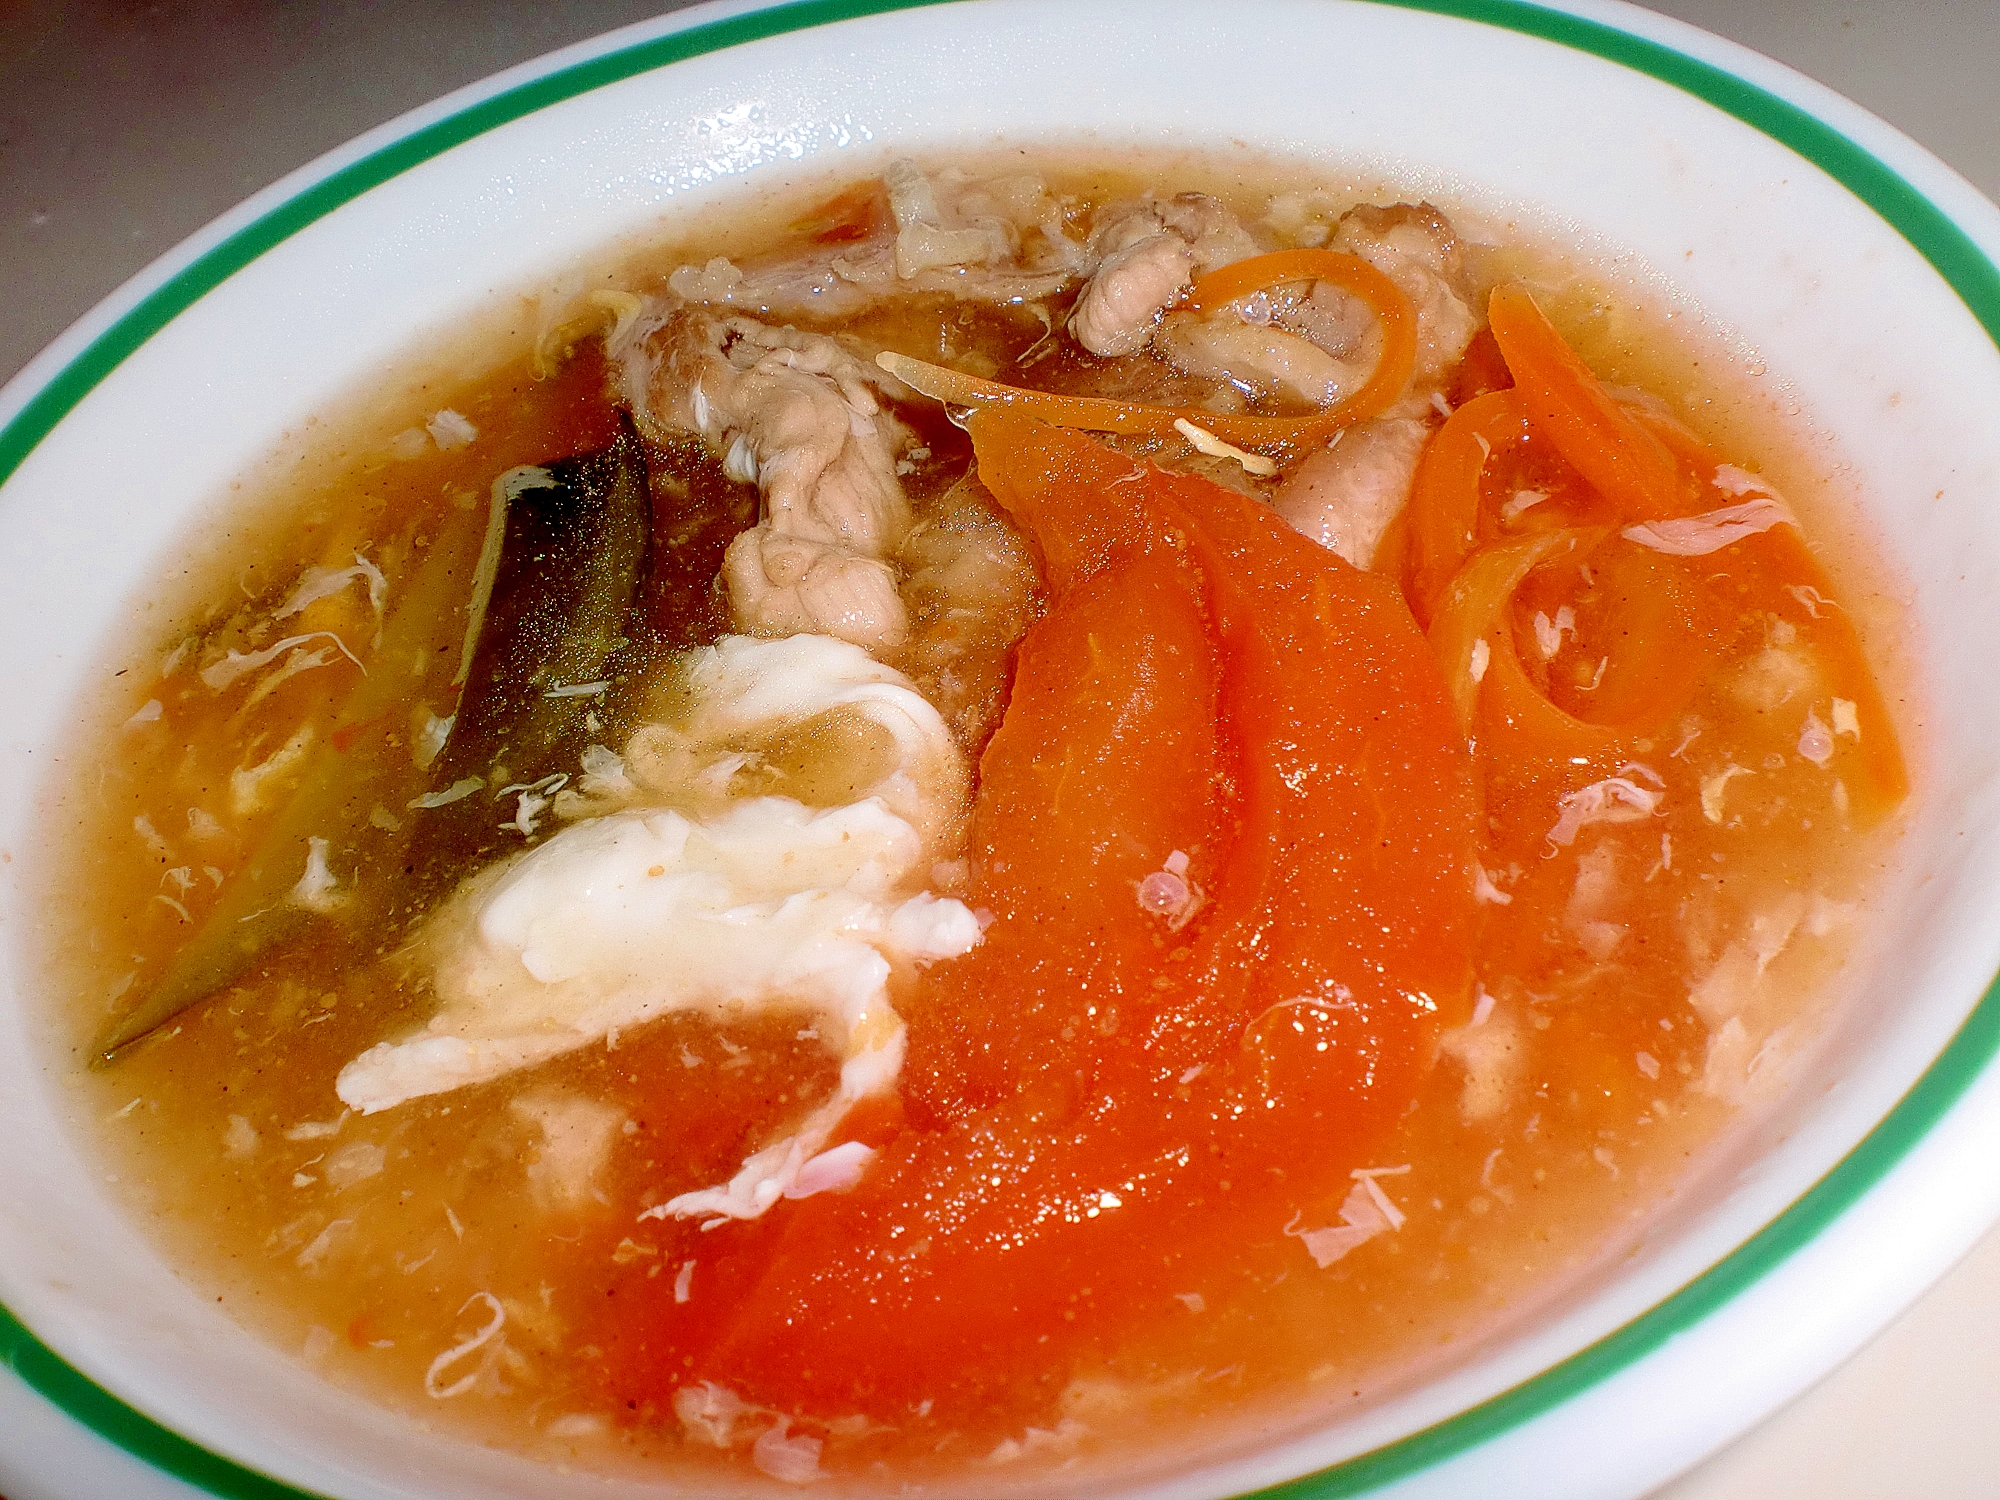 豚肉の野菜スープ